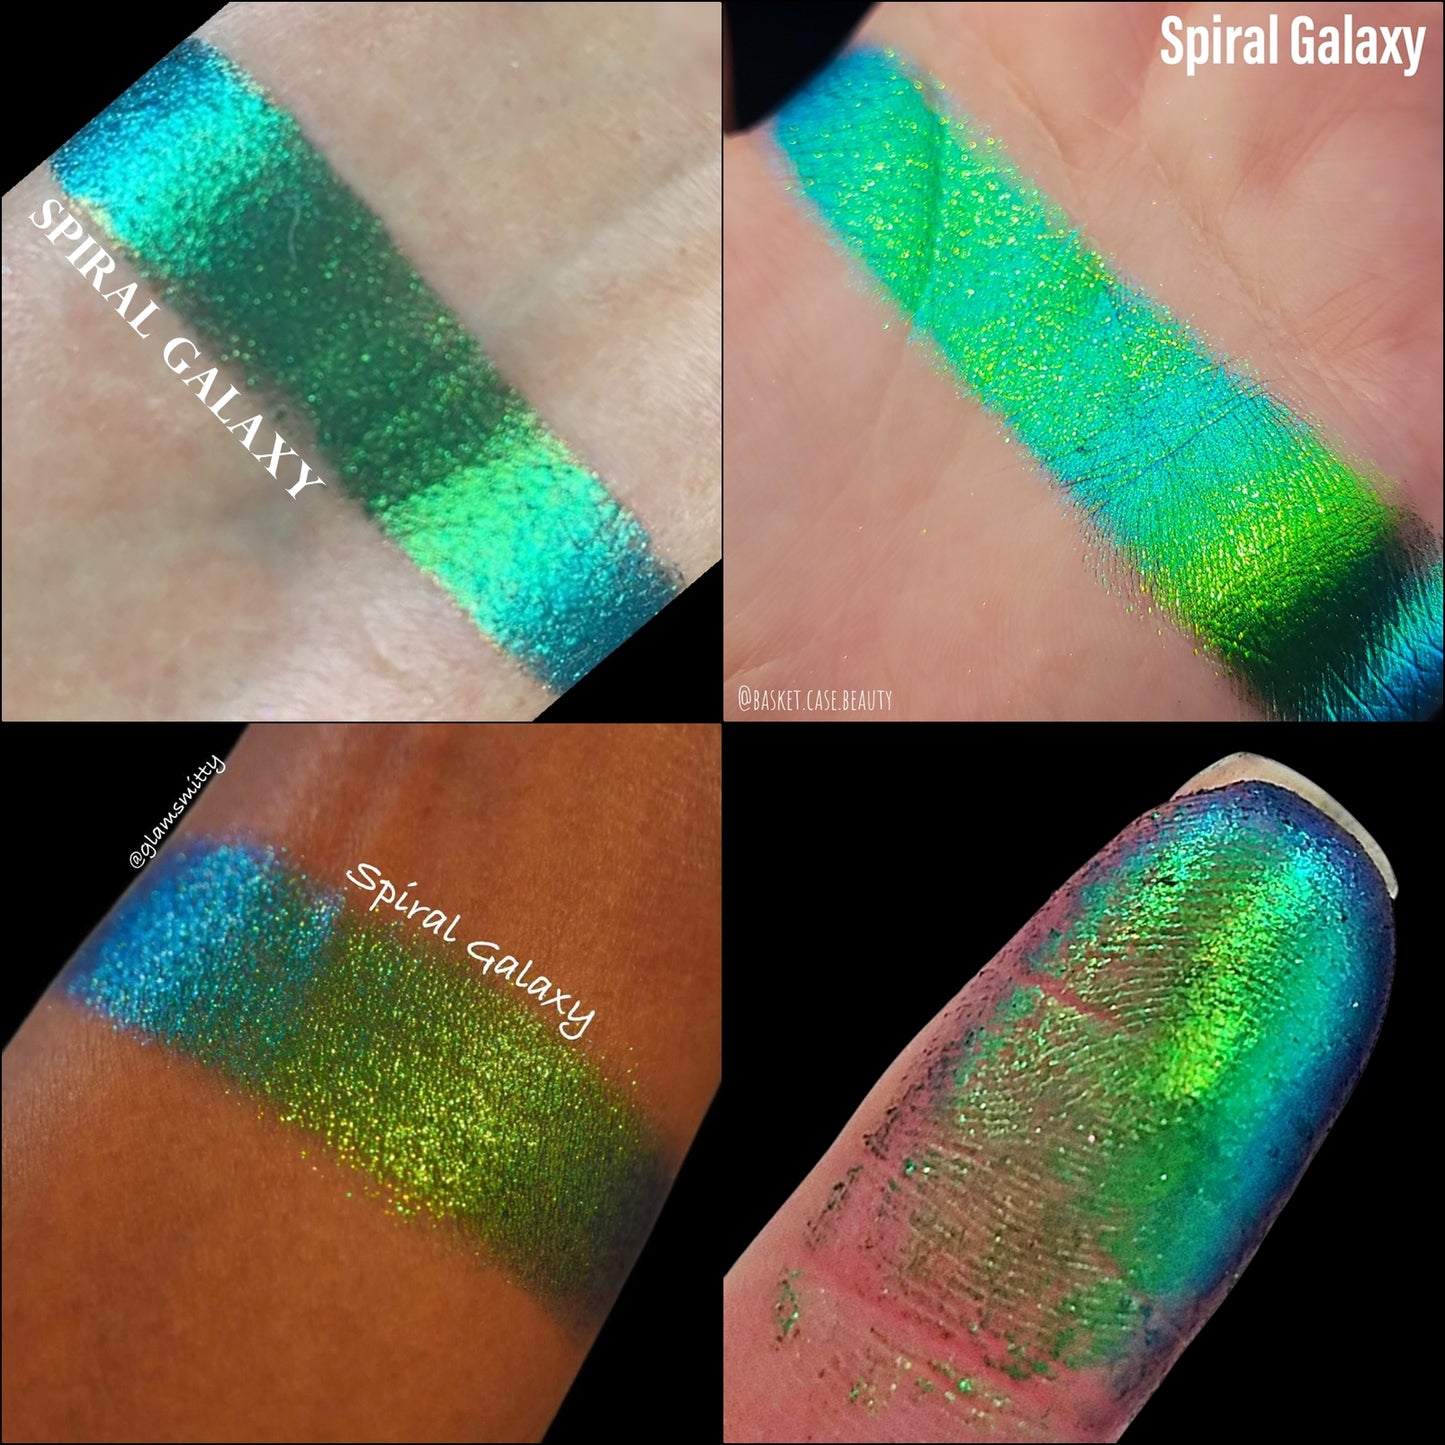 Spiral Galaxy-Multichrome Eyeshadow